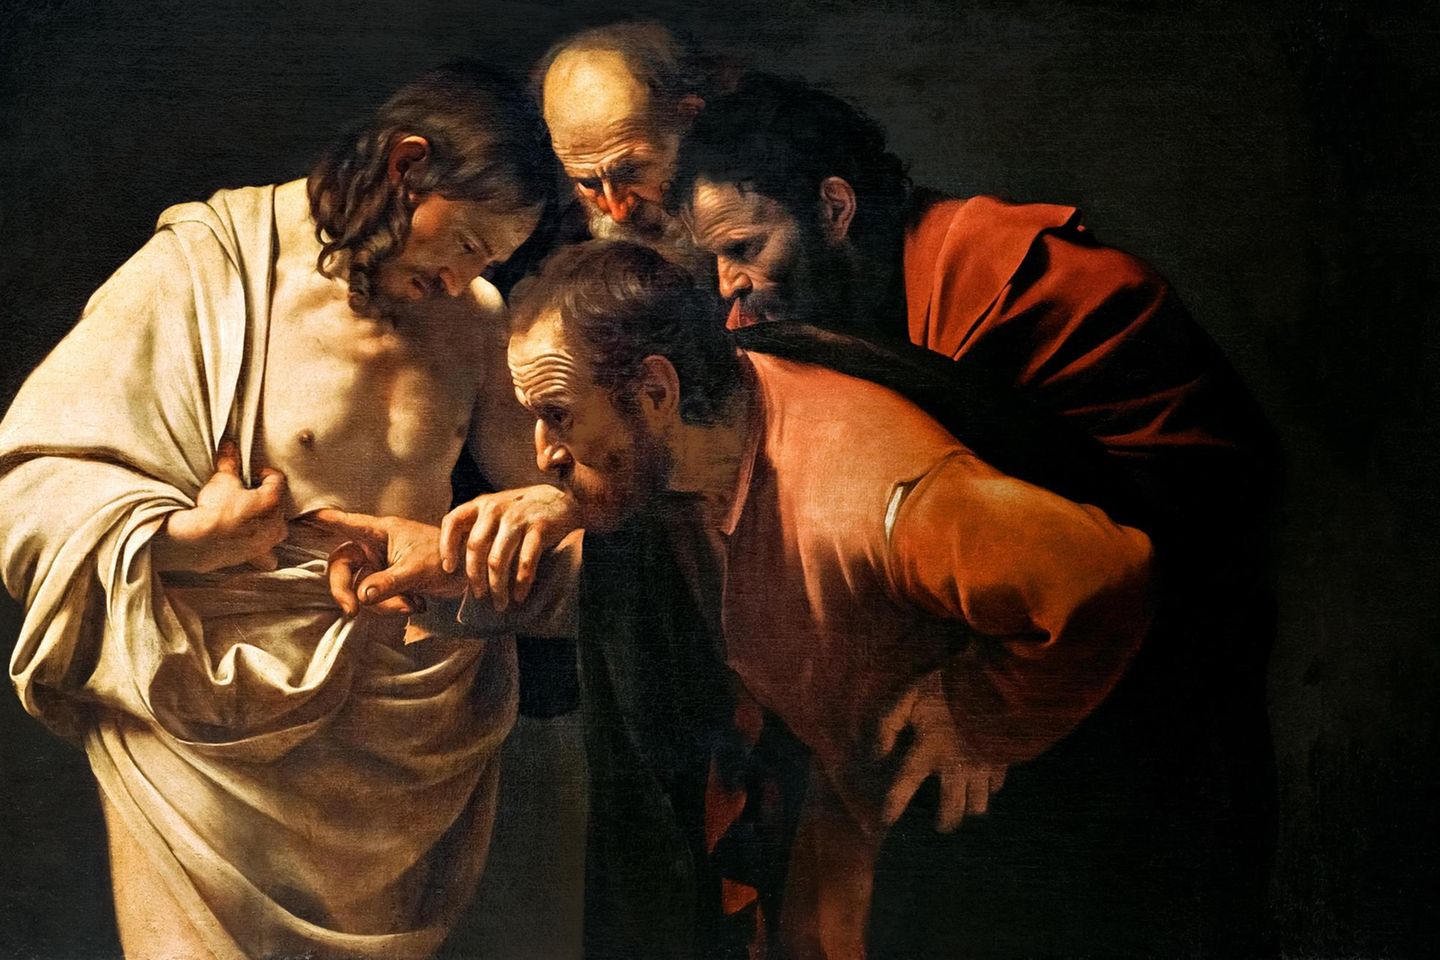 Der italienische Barockkünstler Caravaggio, von dem alle Abbildungen in diesem Beitrag stammen, malt zahlreiche Szenen aus Jesu Leben und Tod. In diesem Gemälde zeigt er die Skepsis eines Jüngers, der die Wunden des angeblich Auf­erstandenen untersucht (»Der ungläubige Thomas«, um 1603)